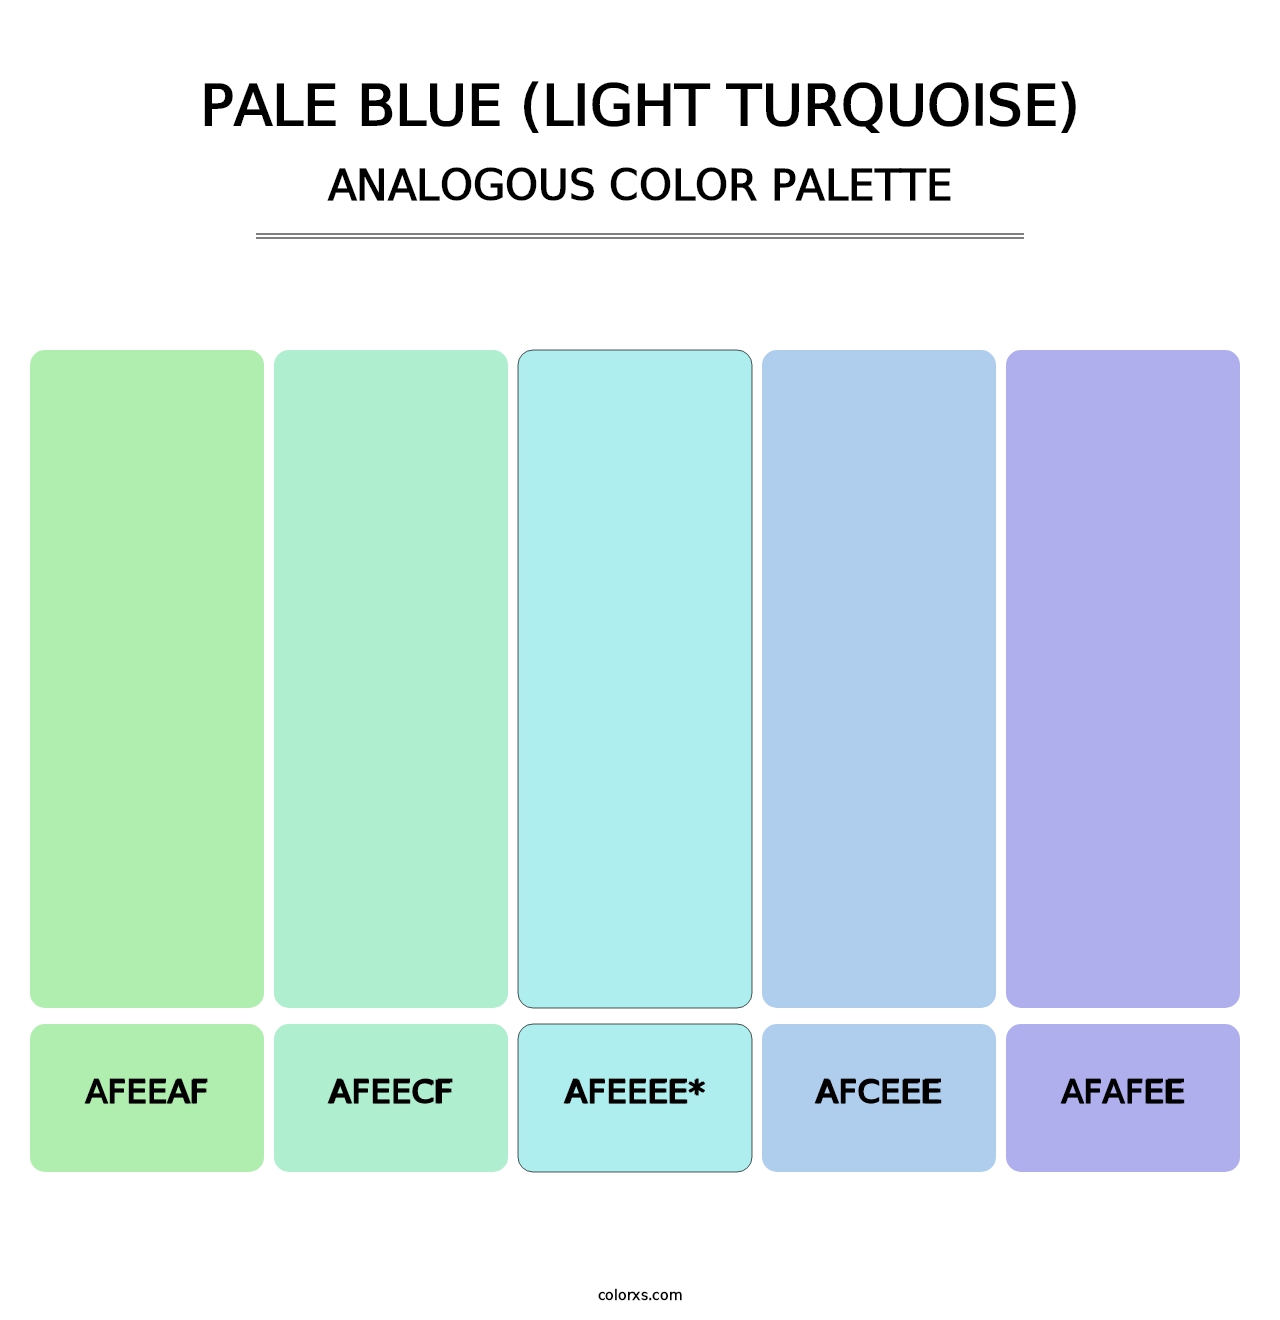 Pale Blue (Light Turquoise) - Analogous Color Palette